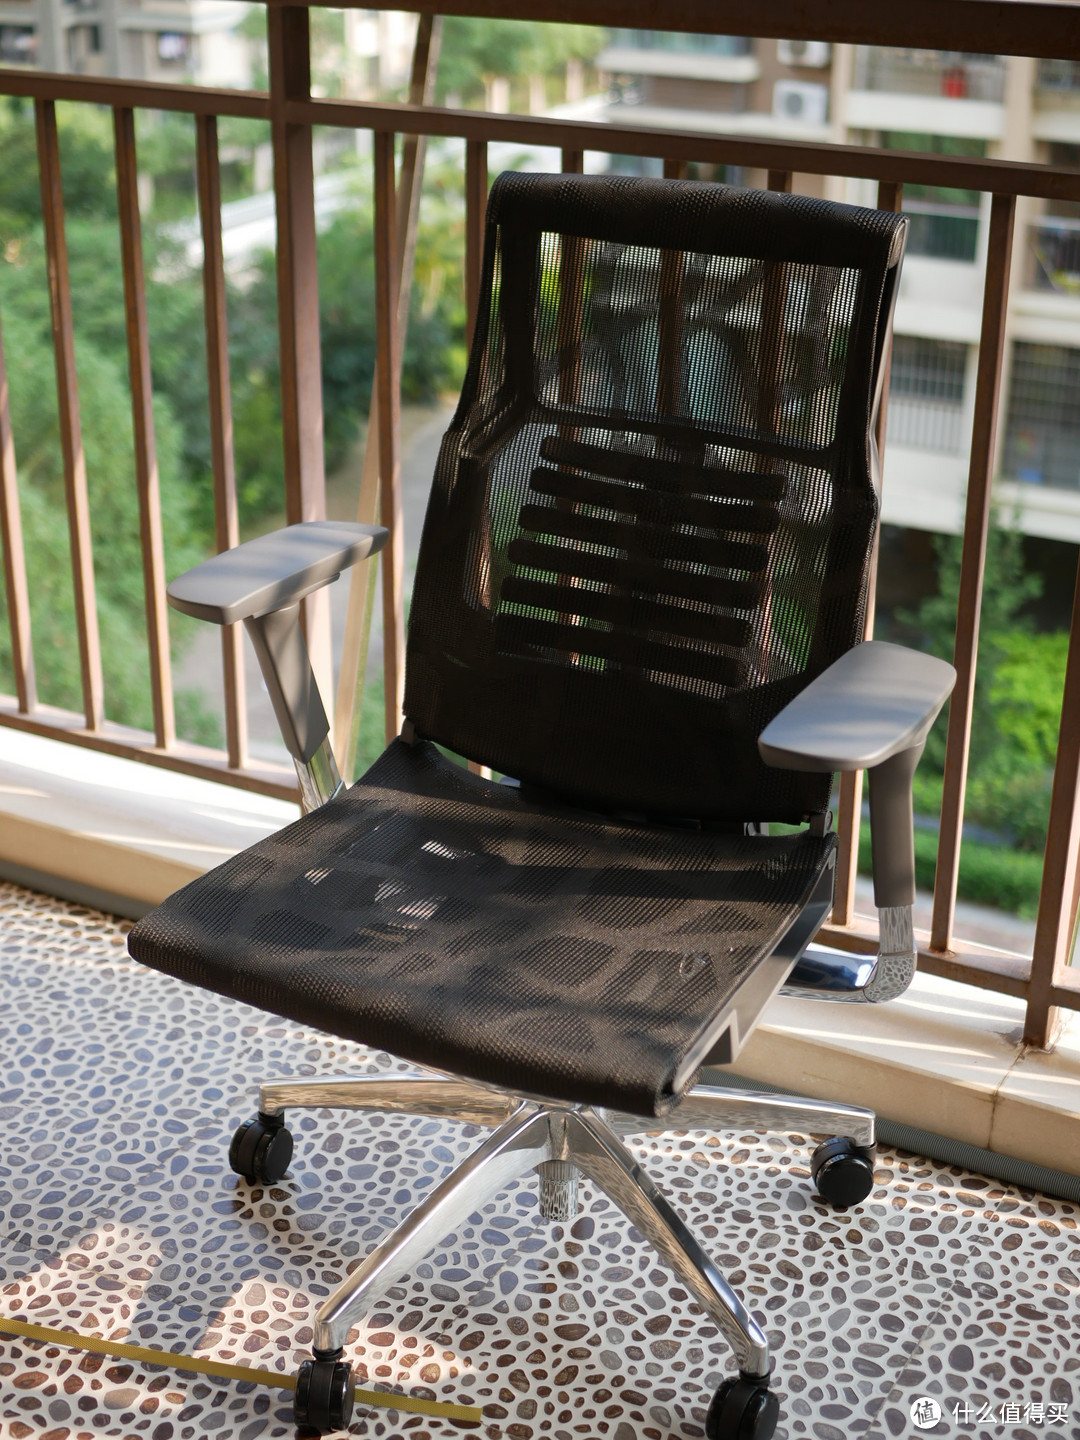 程序猿+技术宅+网虫最爱人体工学椅？为何一把椅子那么贵？